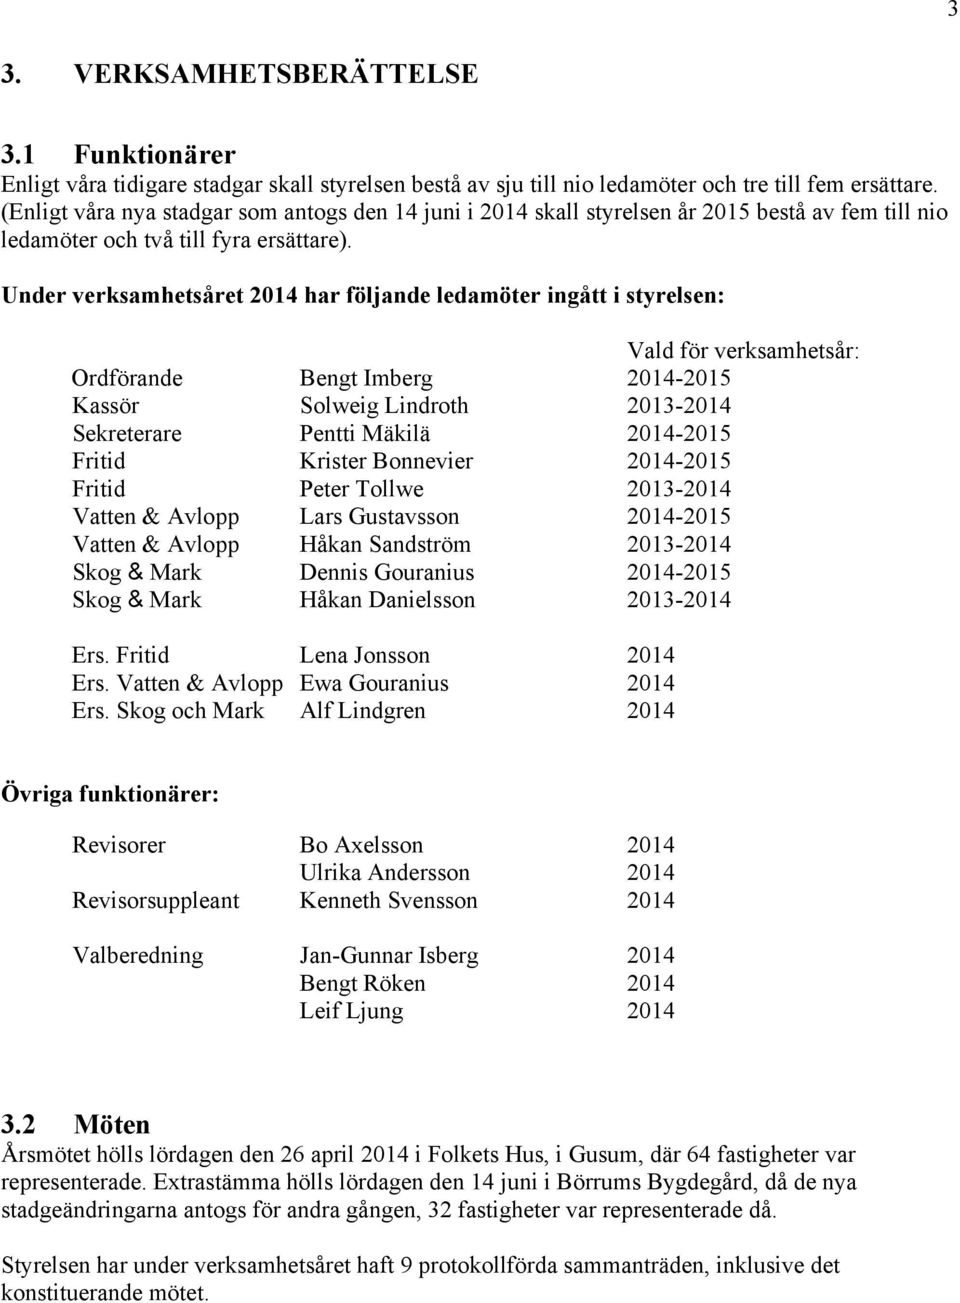 Under verksamhetsåret 2014 har följande ledamöter ingått i styrelsen: Vald för verksamhetsår: Ordförande Bengt Imberg 2014-2015 Kassör Solweig Lindroth 2013-2014 Sekreterare Pentti Mäkilä 2014-2015